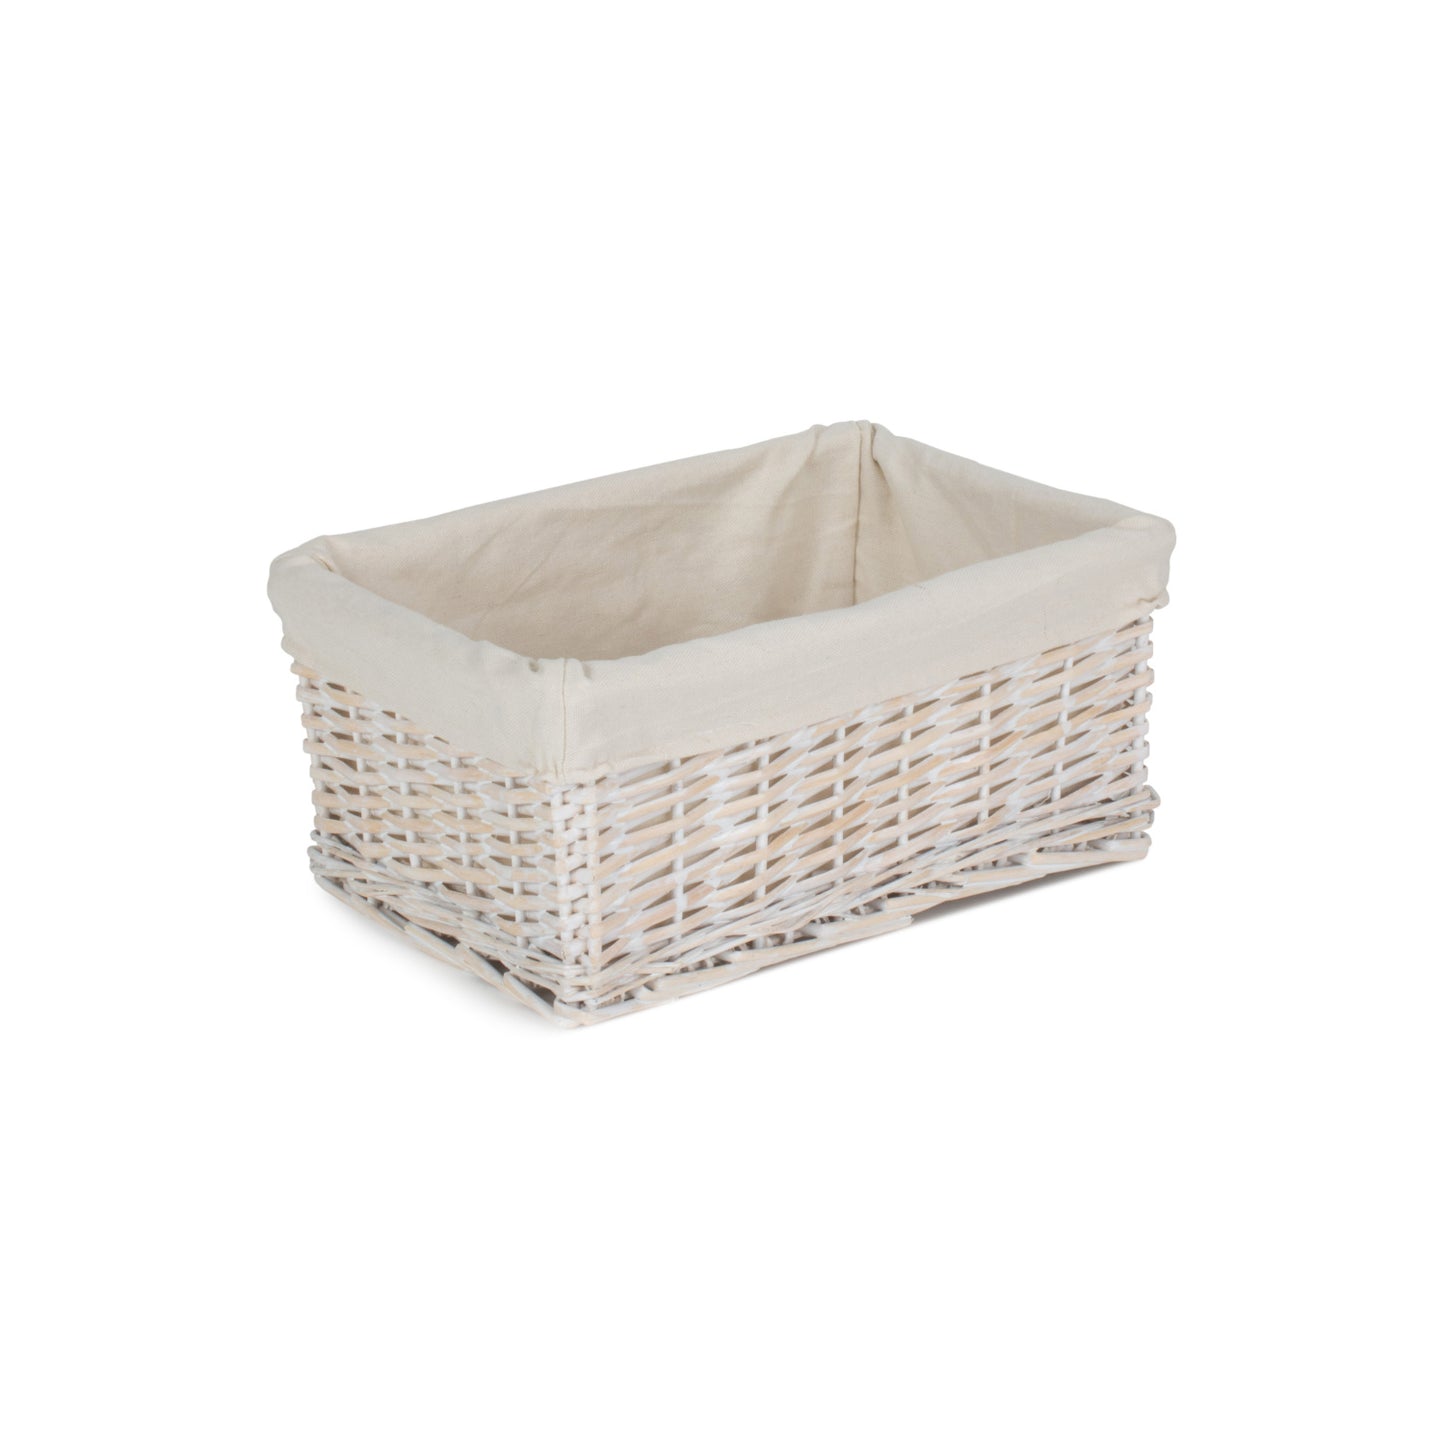 Medium White Wash Wicker Storage Basket With White Lining